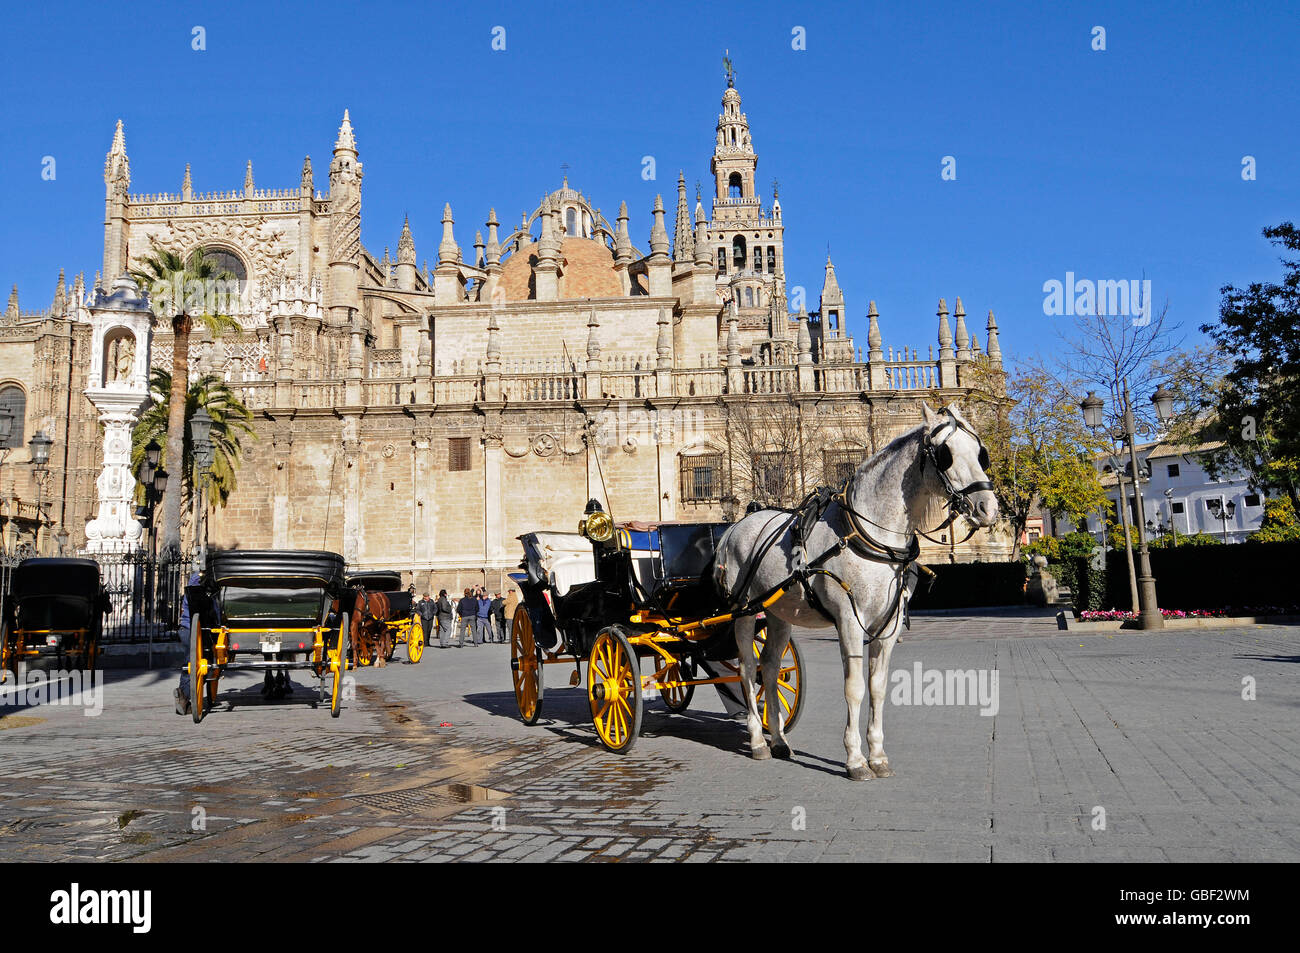 Cheval et un chariot, la place Plaza del Triunfo, Santa Maria de la Sede, Cathédrale de Séville, Séville, Andalousie, province de l'Espagne, Europe Banque D'Images